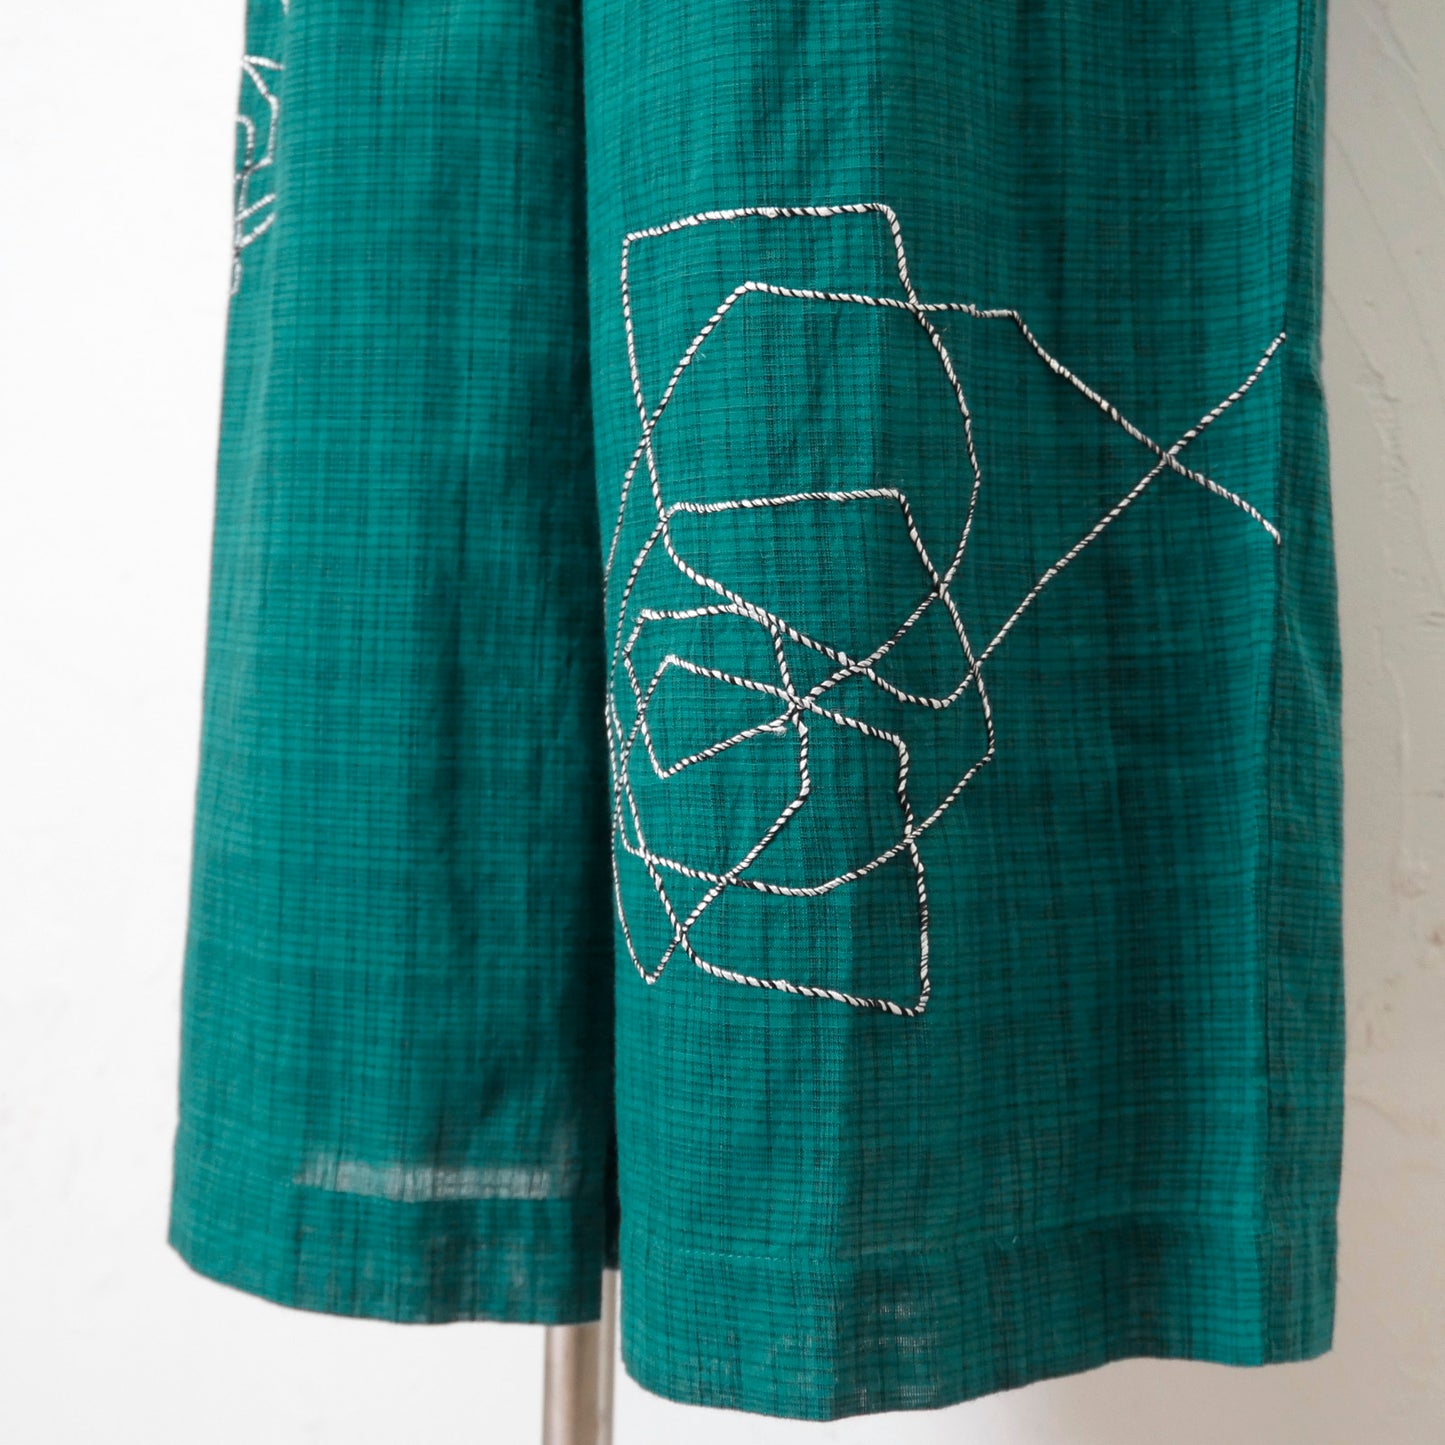 Calças com bordados aleatórios em fita de algodão